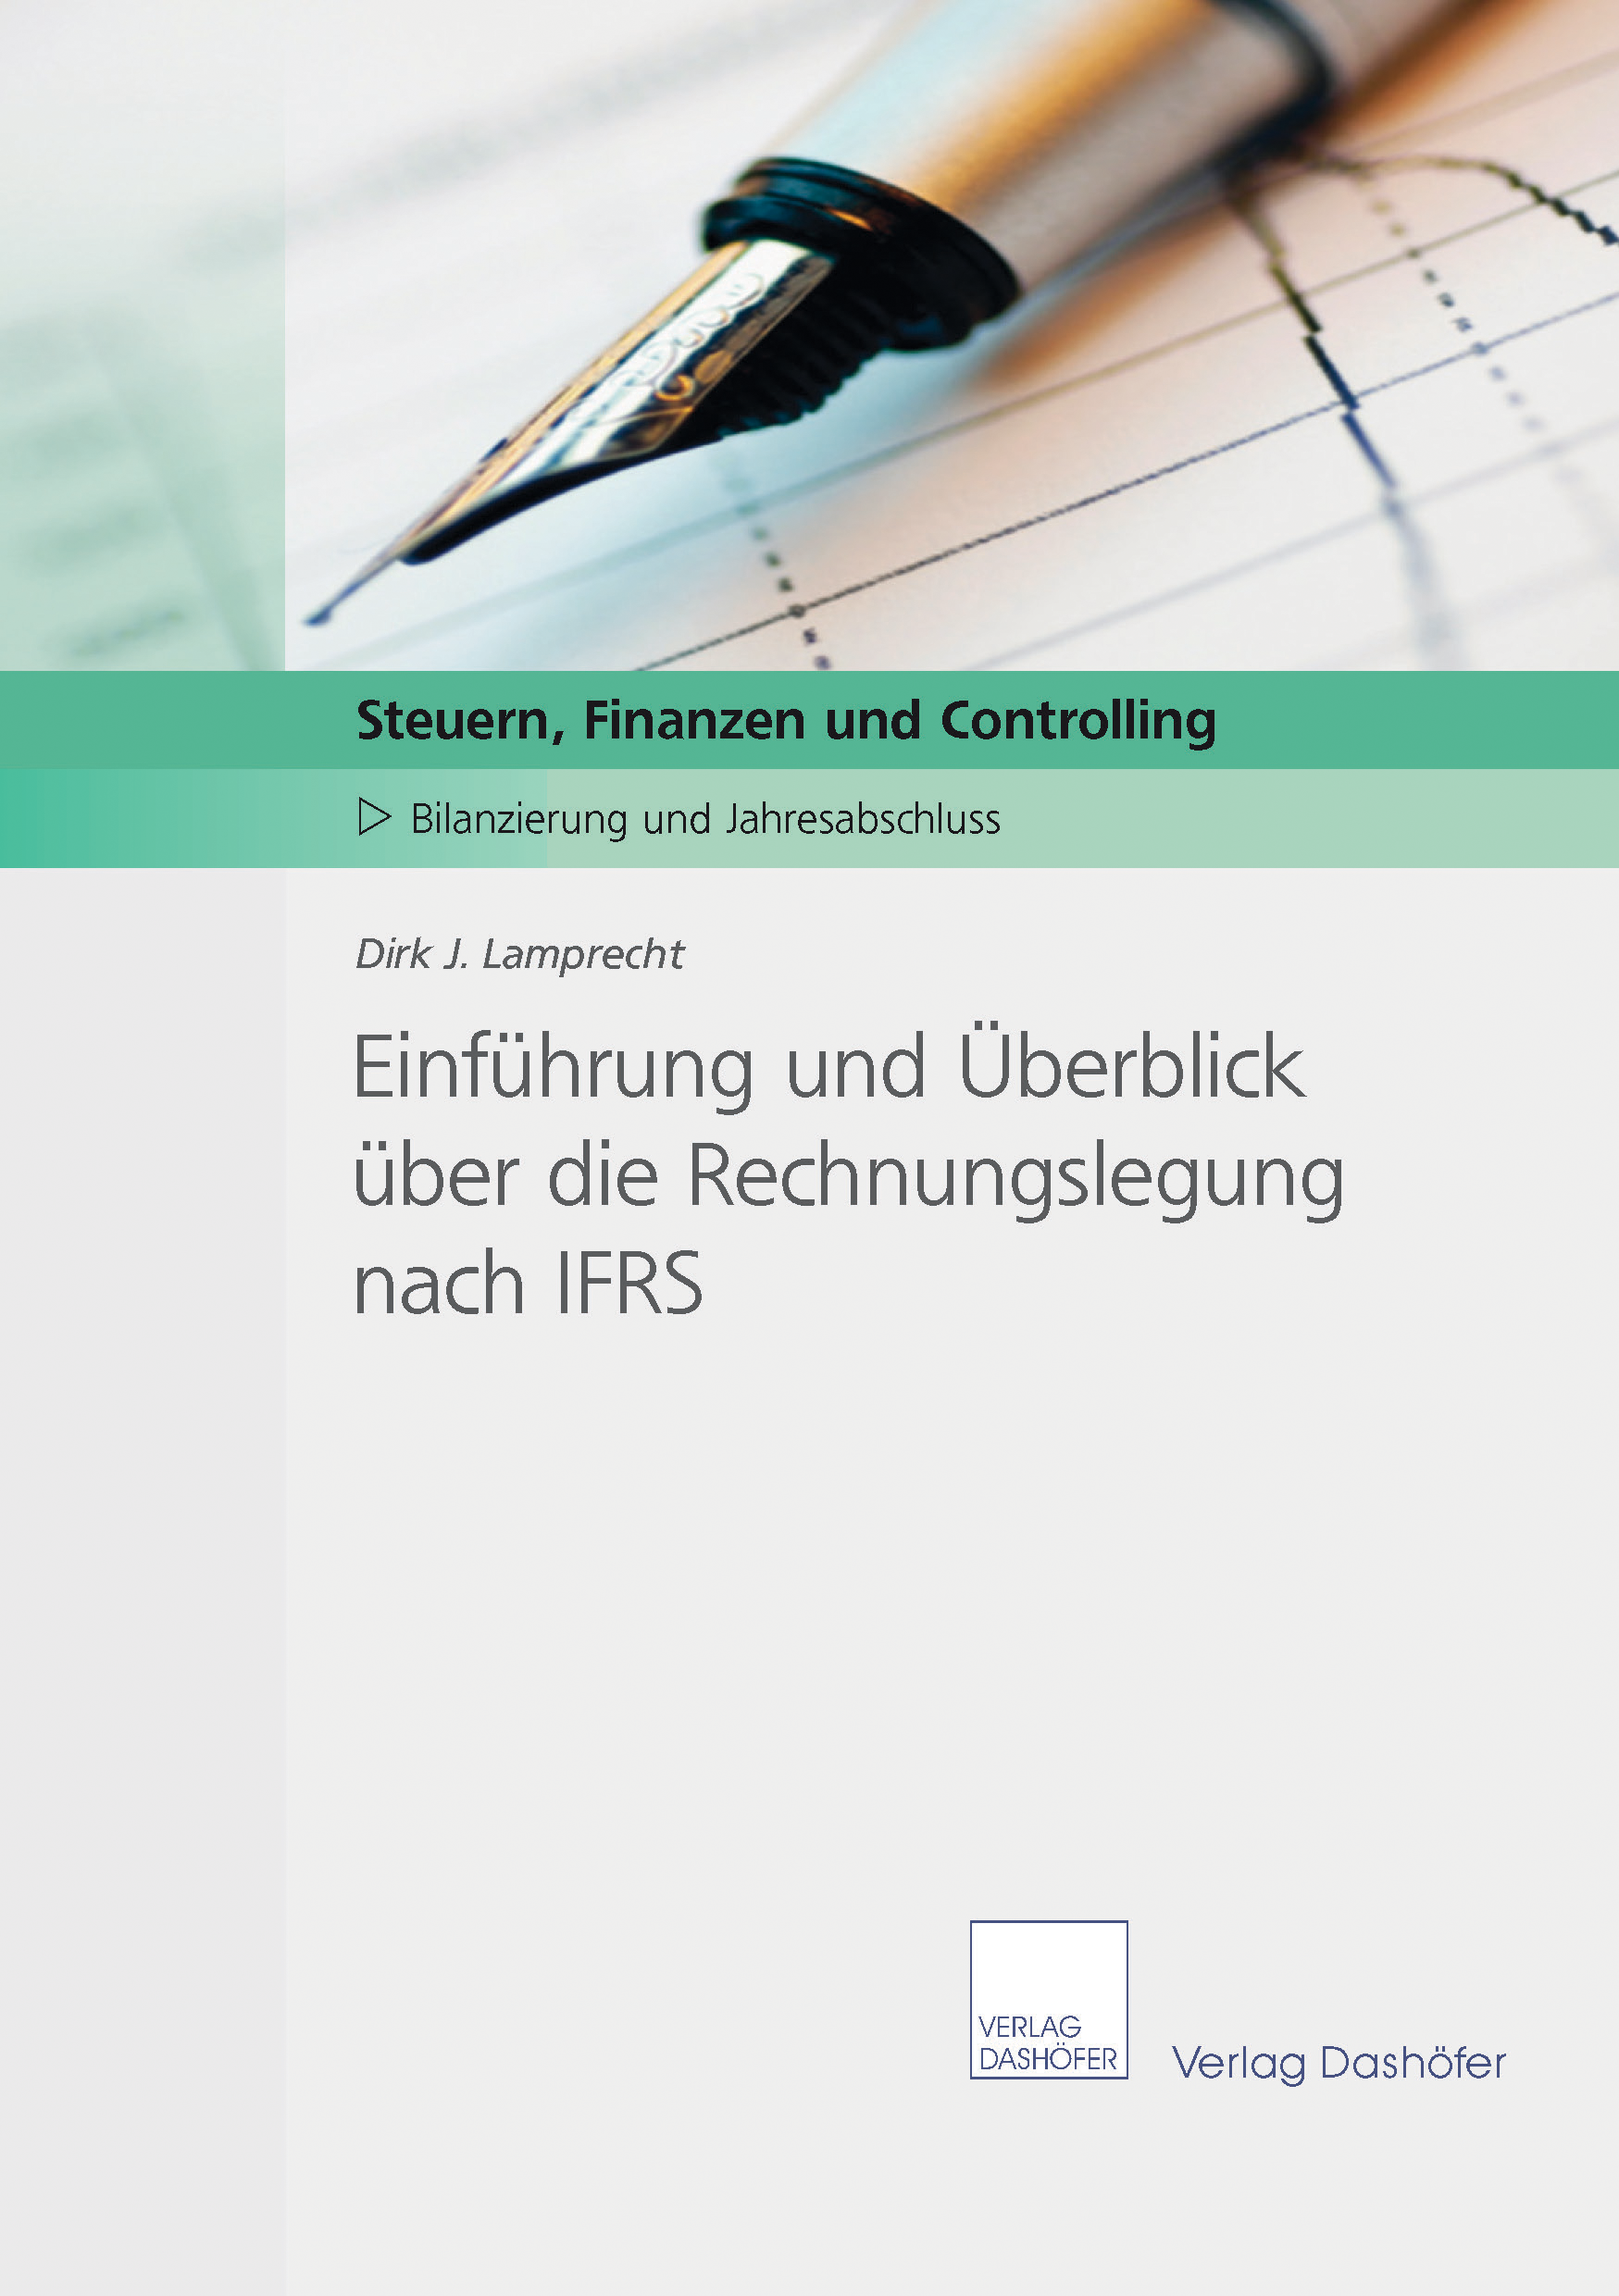 Fachbuch: Einführung und Überblick über die Rechnungslegung nach IFRS